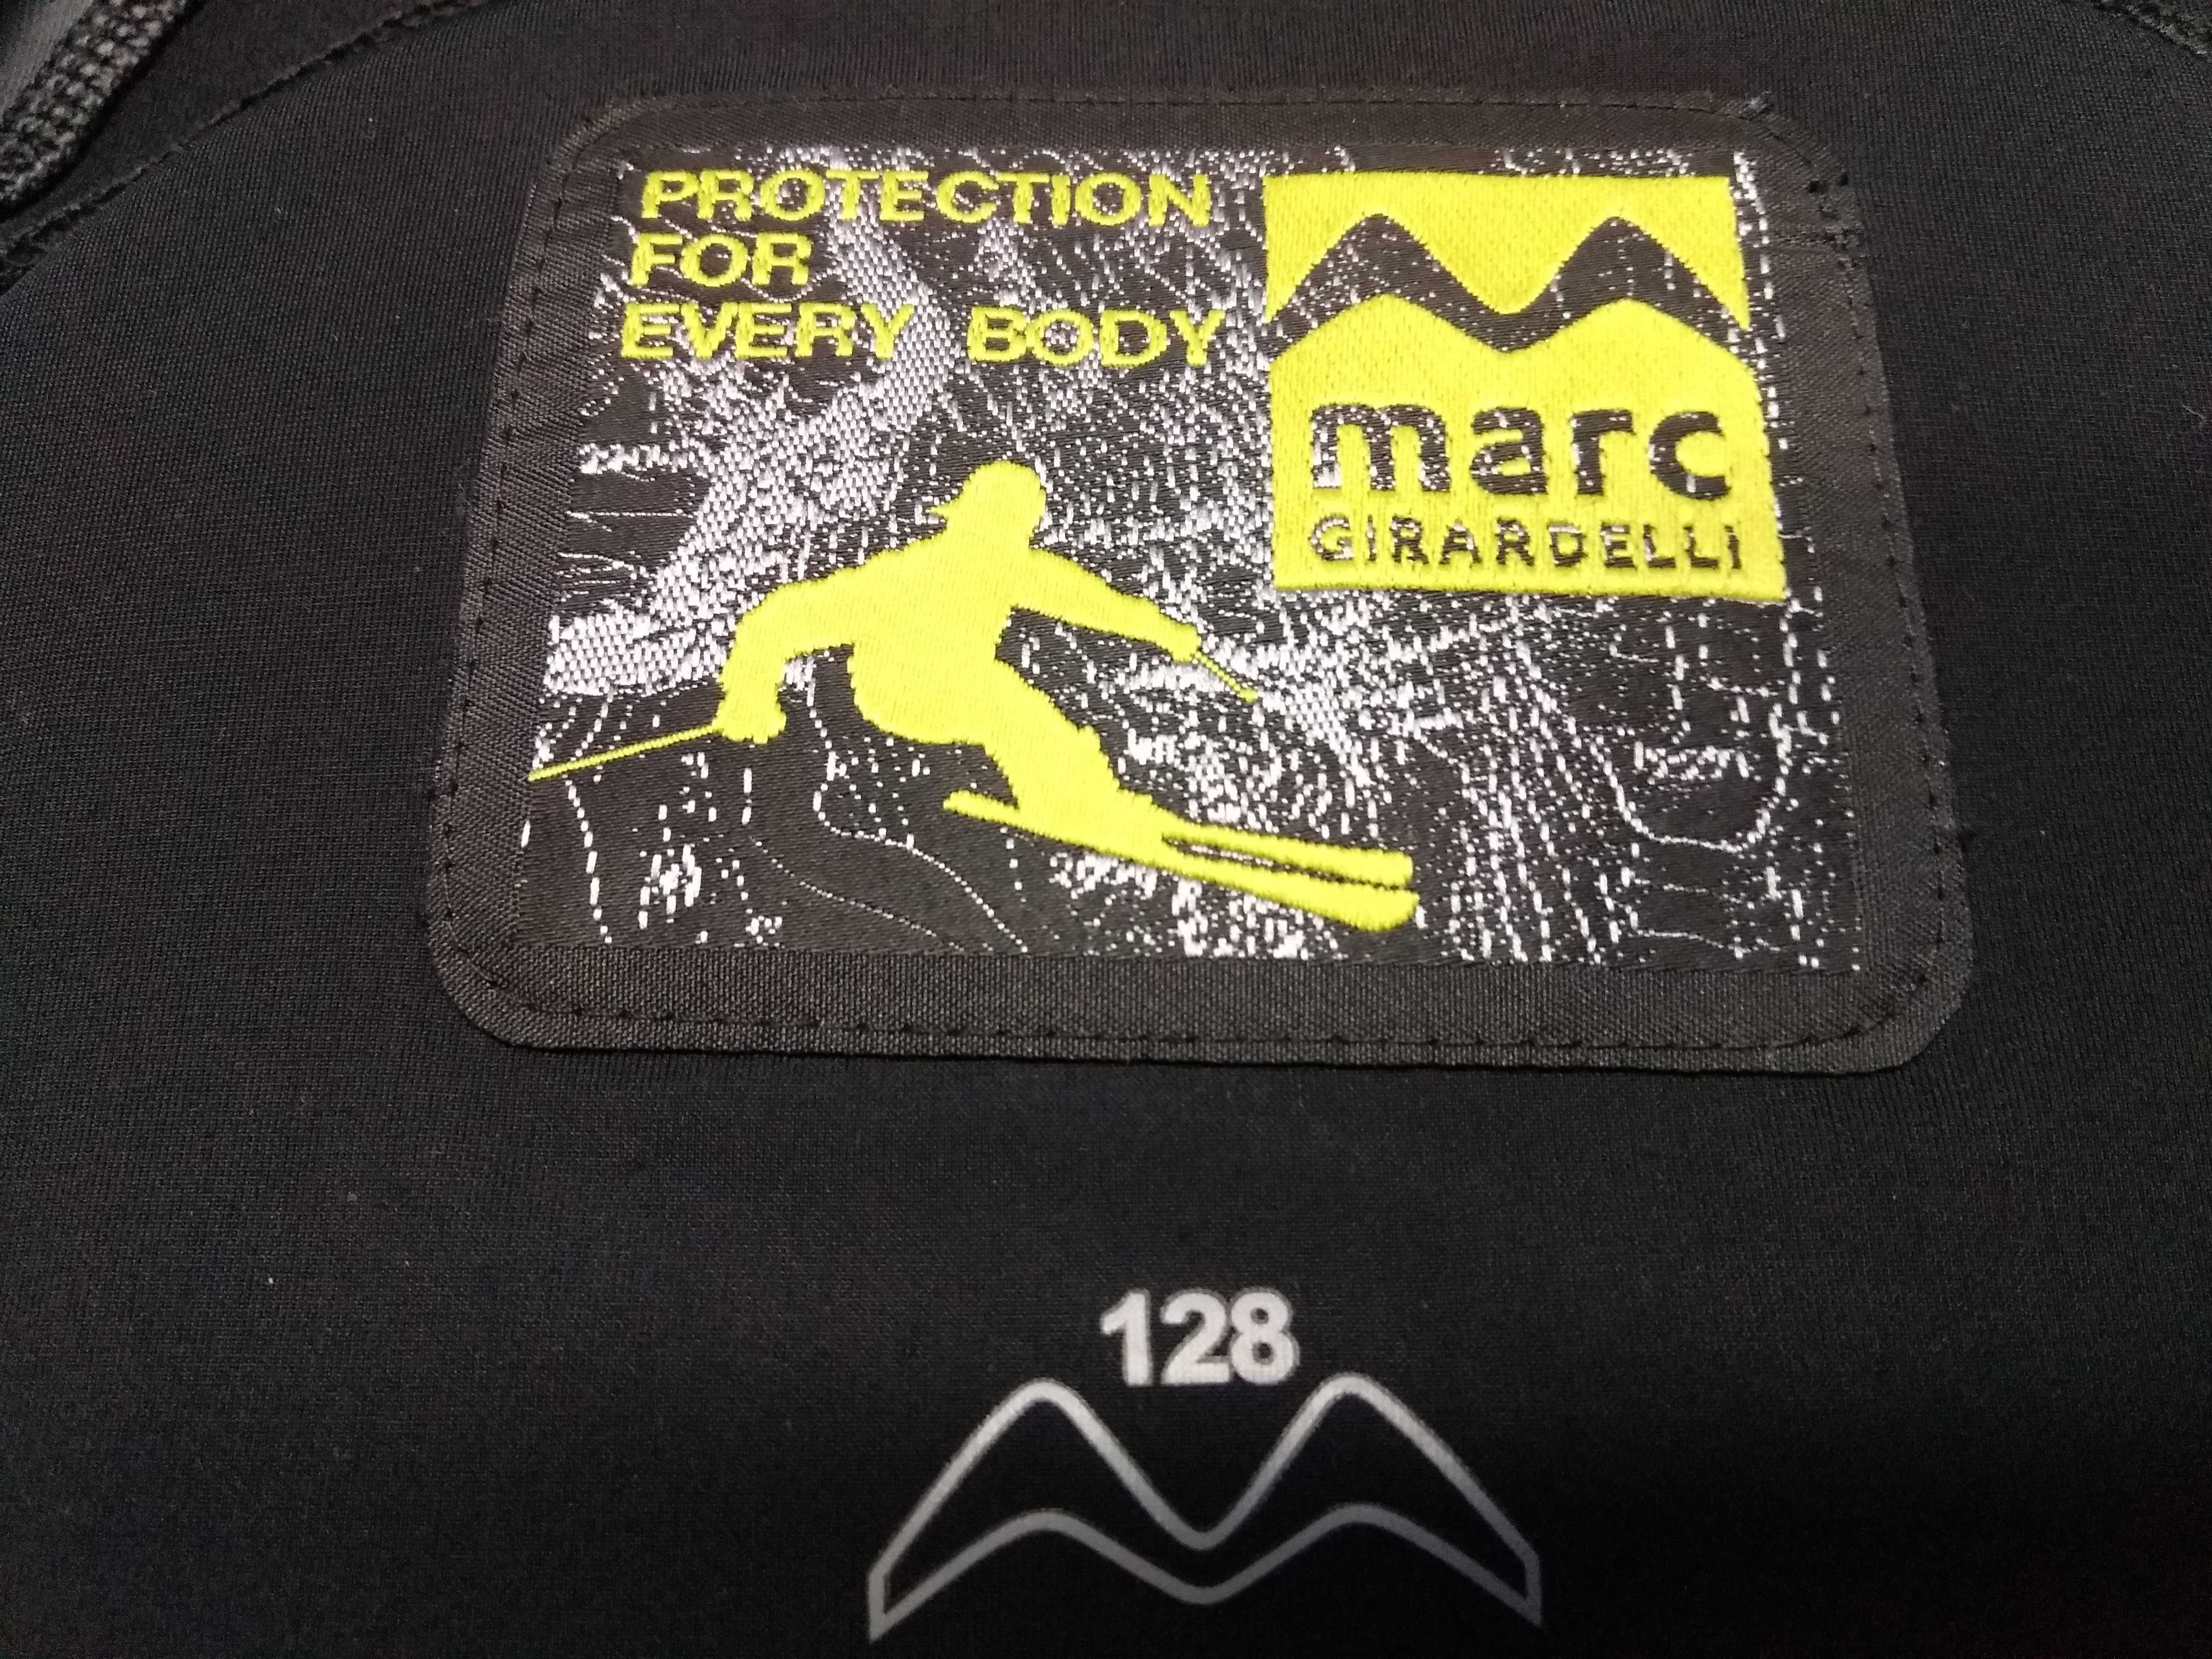 Лыжный защитный штаны Crane жилет для спины Marc Girardelli.